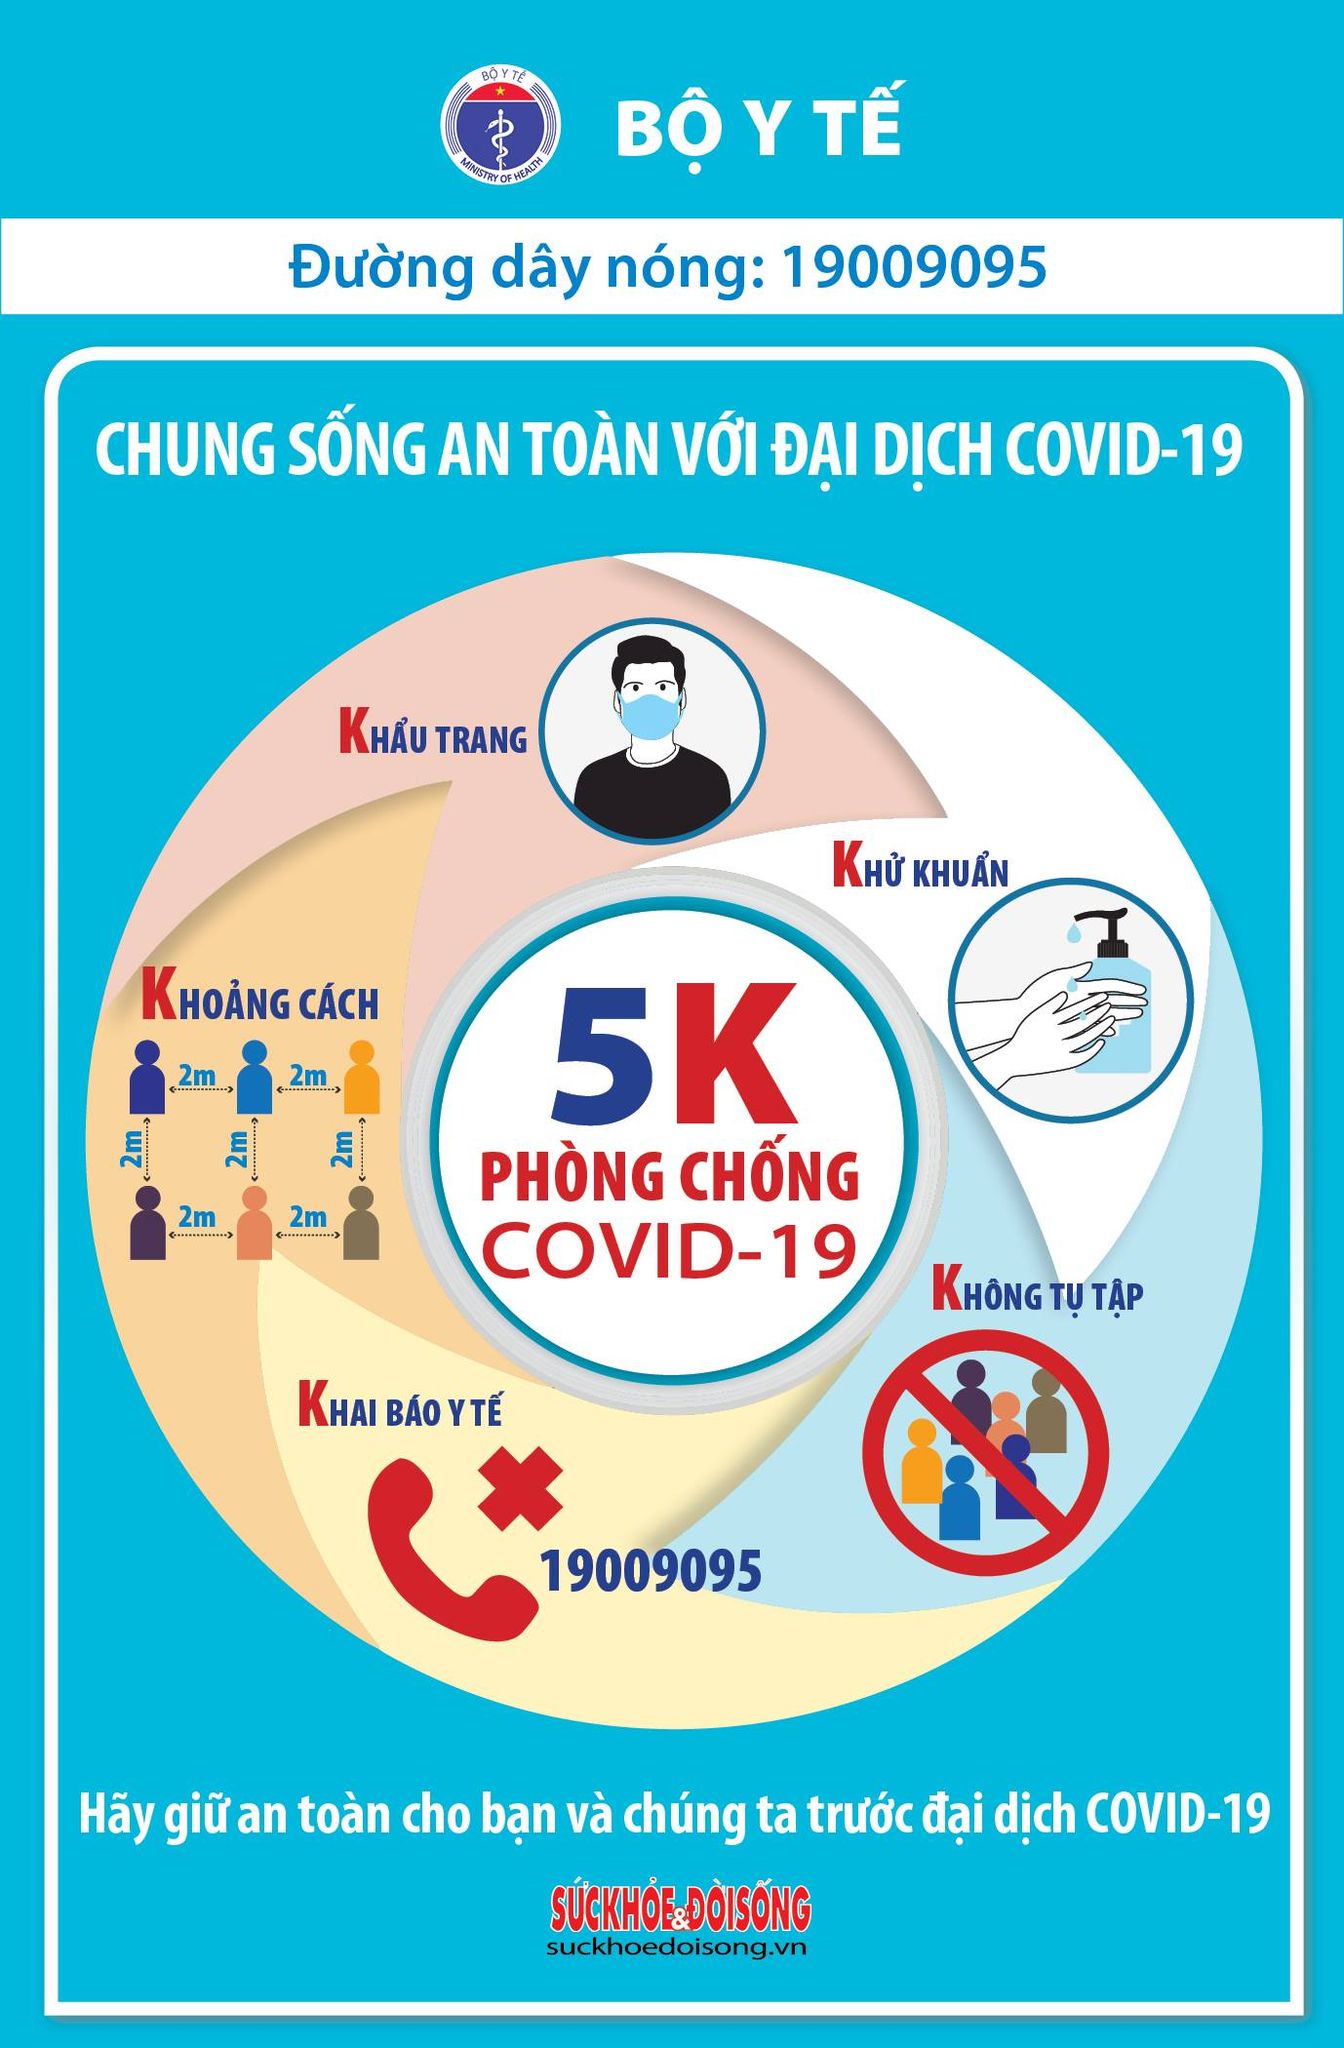 Sáng 29 Tết, Việt Nam có 1 ca mắc COVID-19 trong cộng đồng, gần 100.000 người cách ly chống dịch